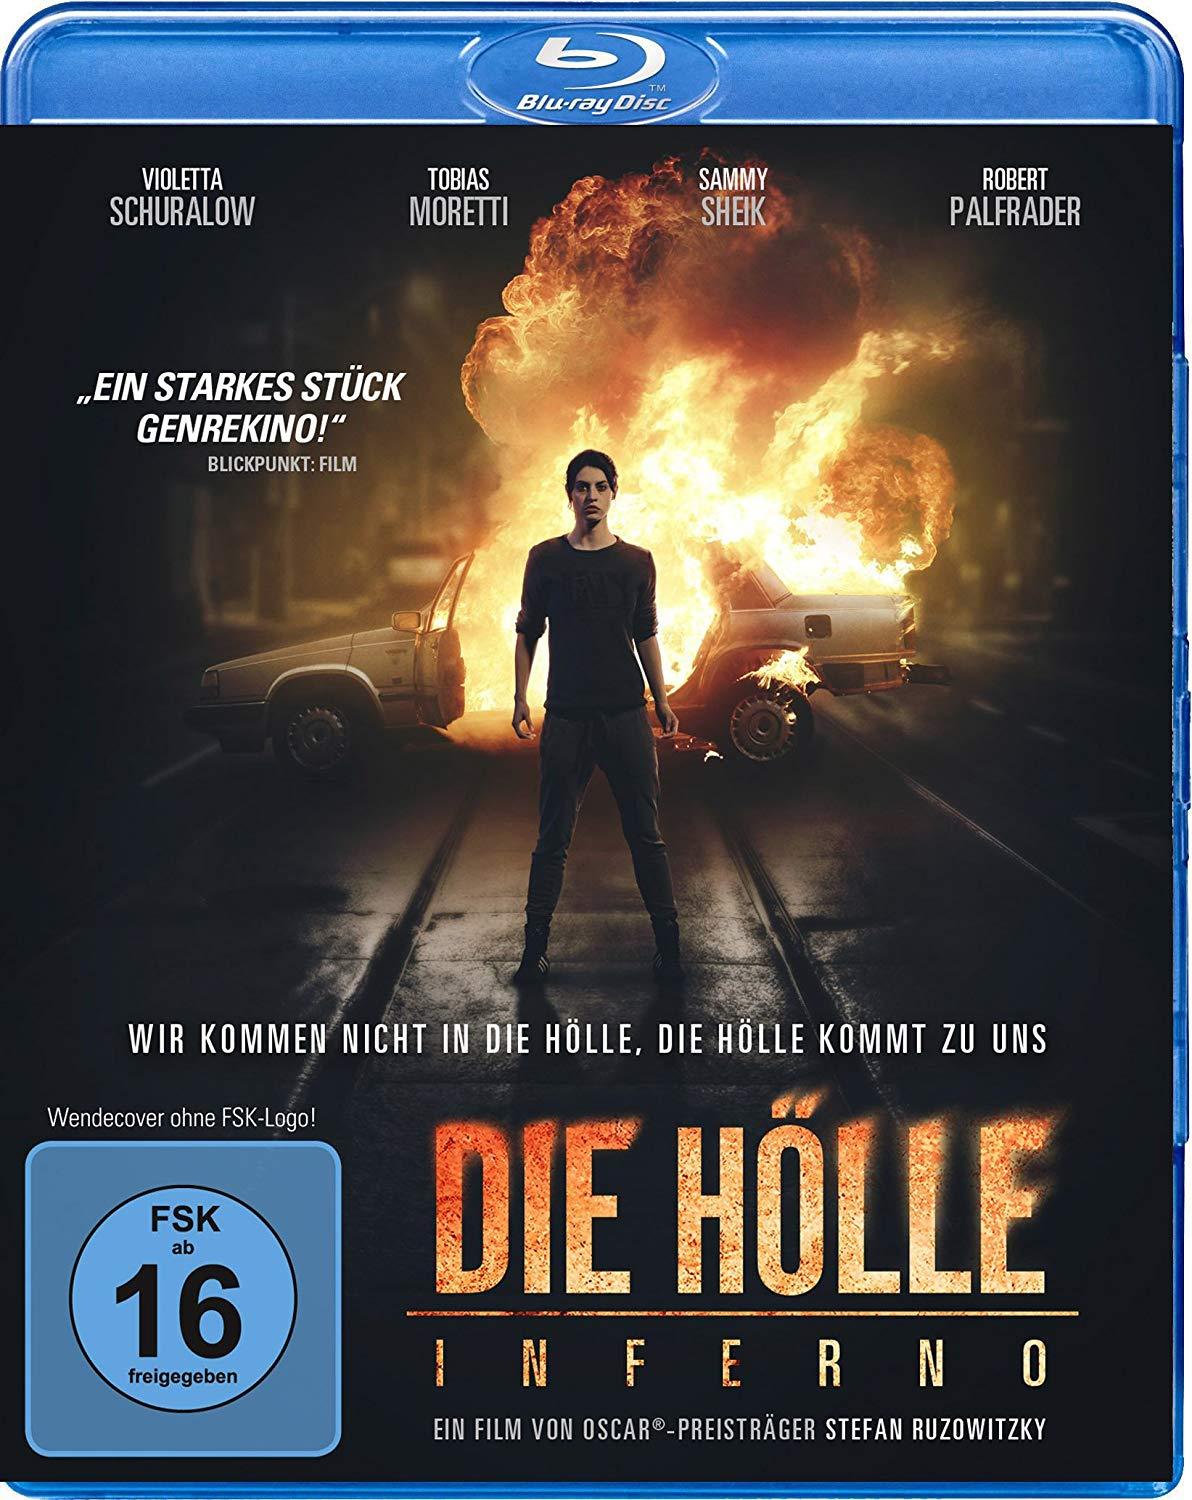 Image of Die Hölle - Inferno